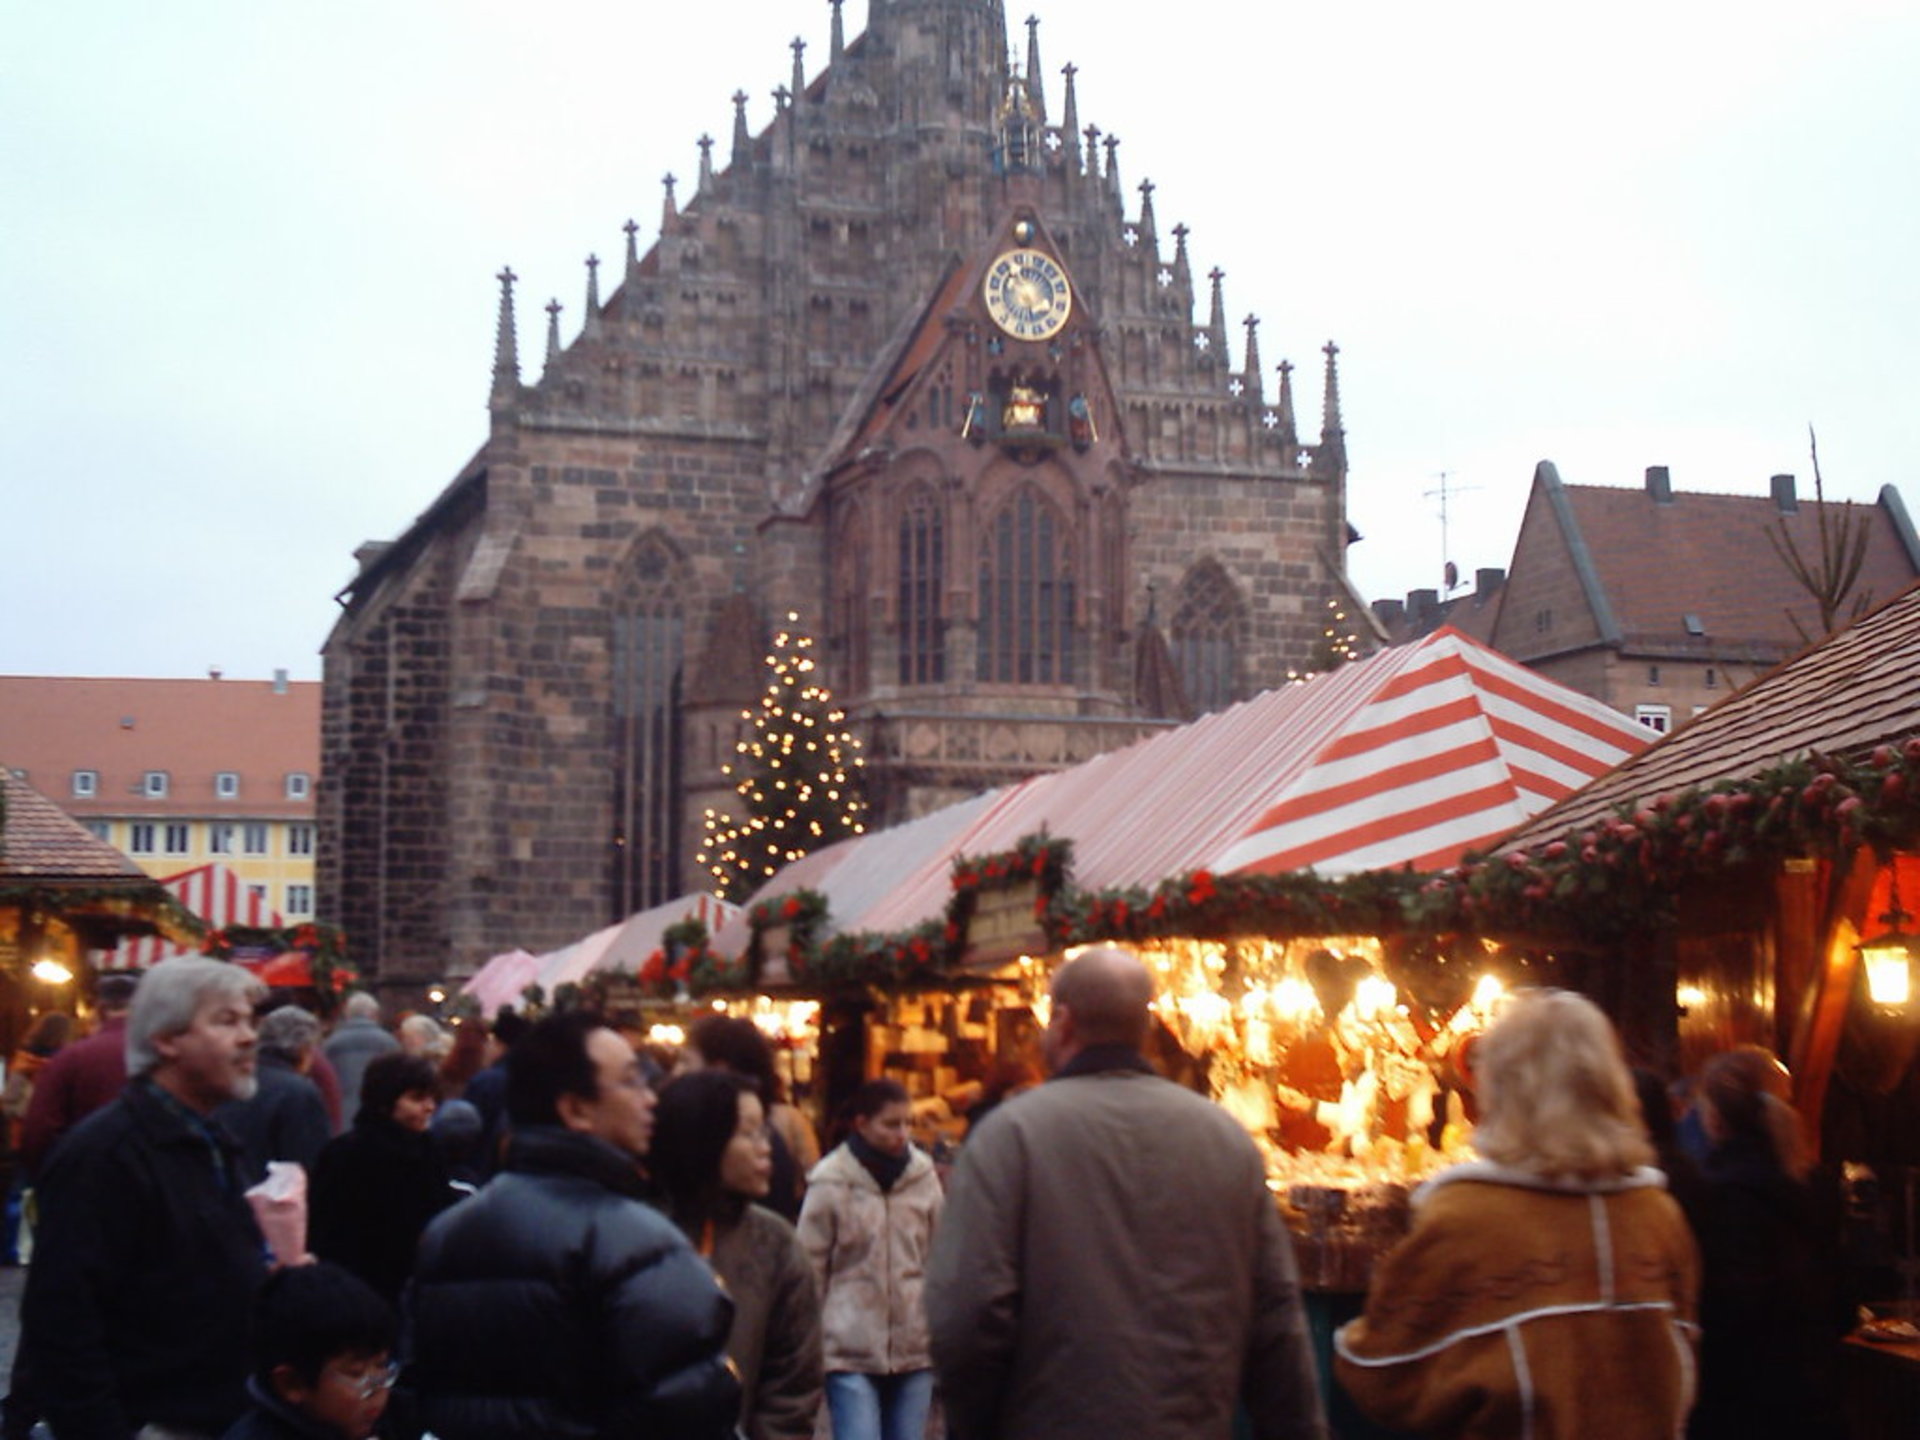 Nürnberger Weihnachtsmarkt